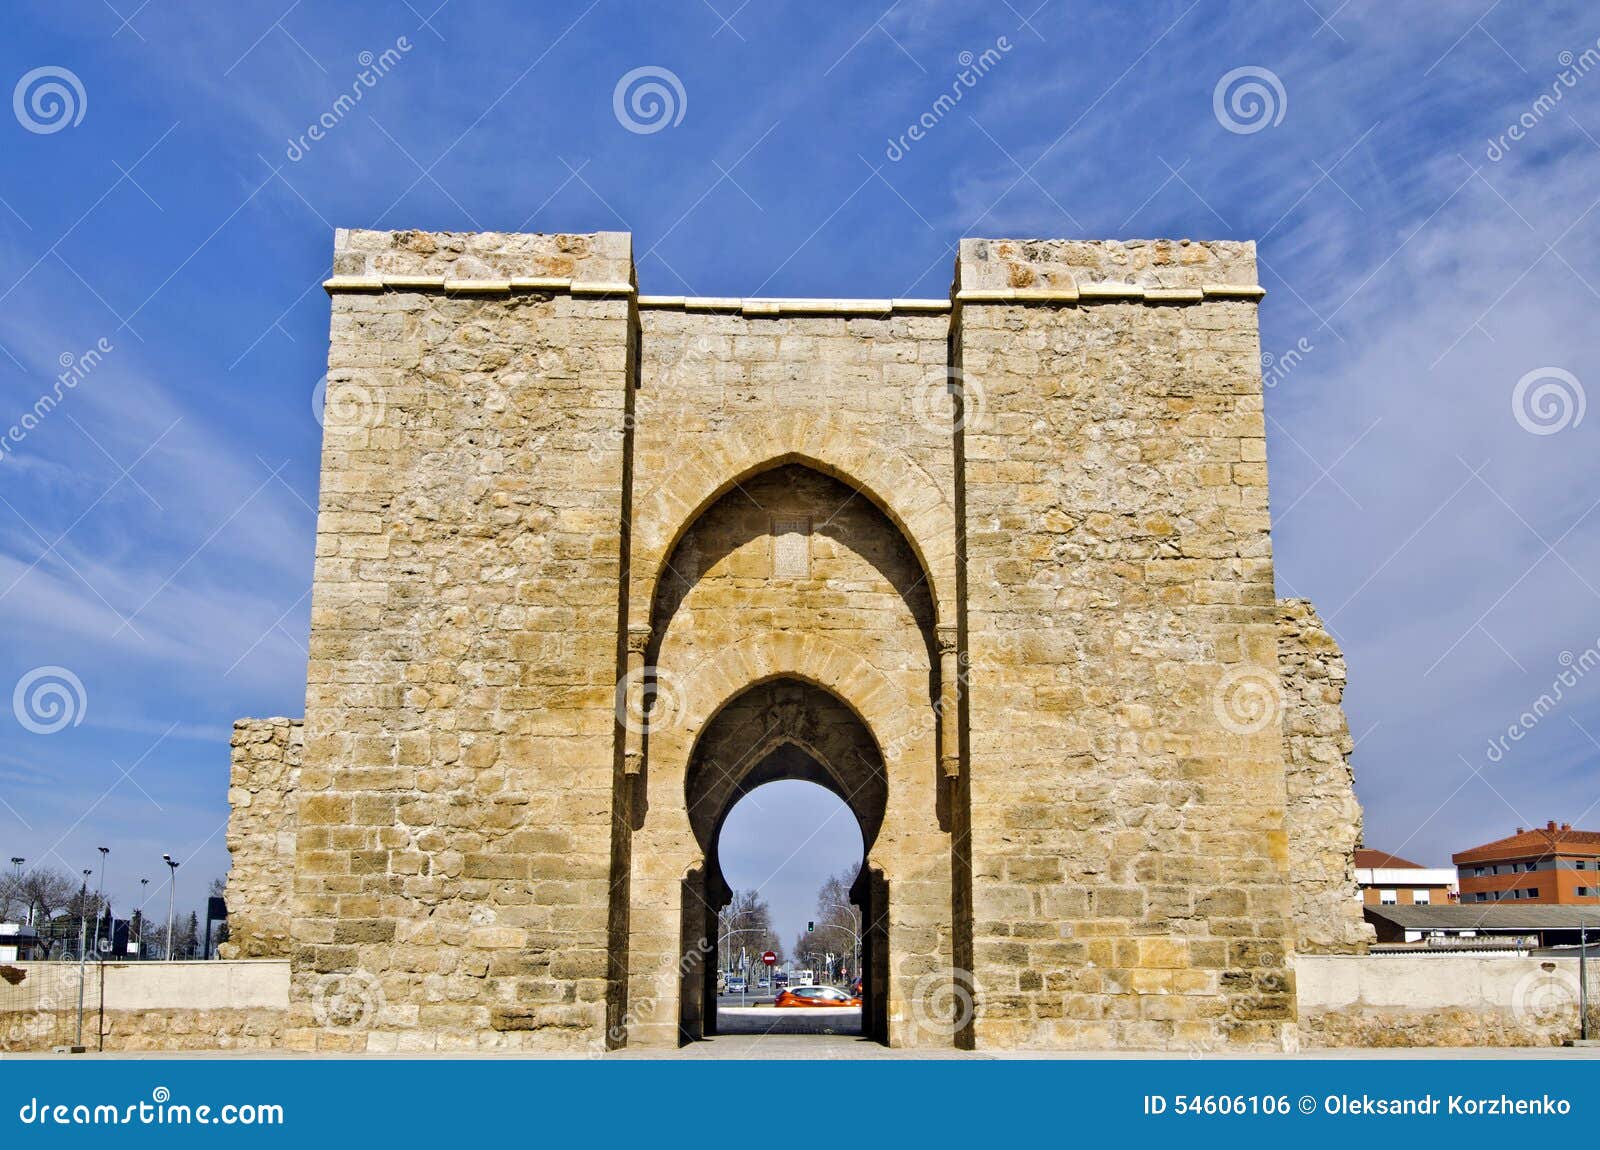 puerta de toledo gate in ciudad real